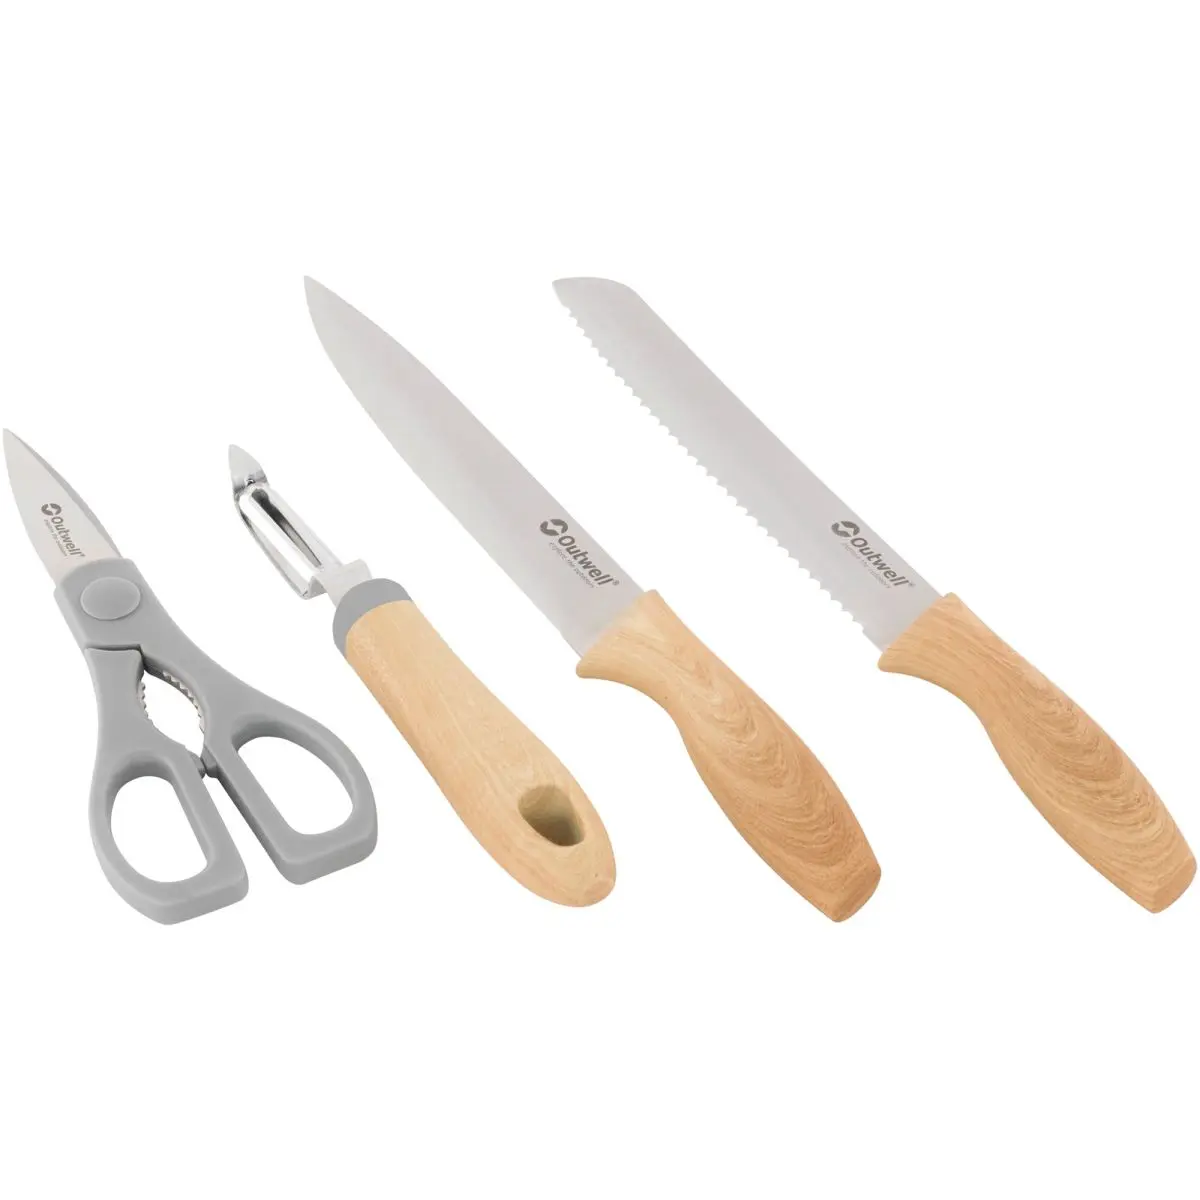 Chena Messer Set - Messerset mit Schere